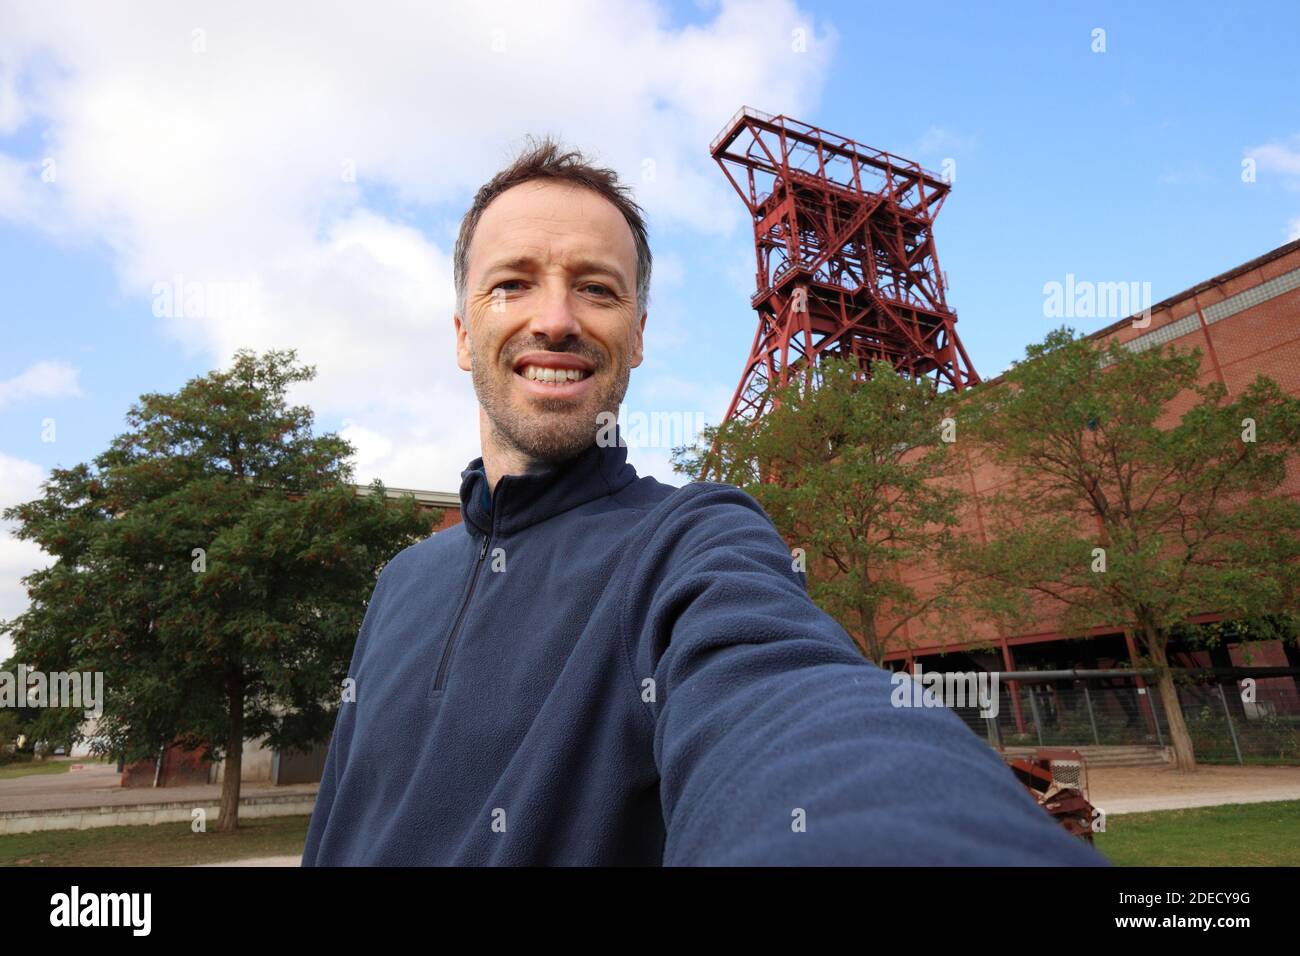 Selfie touristique dans la zone industrielle de Gelsenkirchen, Allemagne. Voyageur selfie avec Zeche consolidation. Banque D'Images